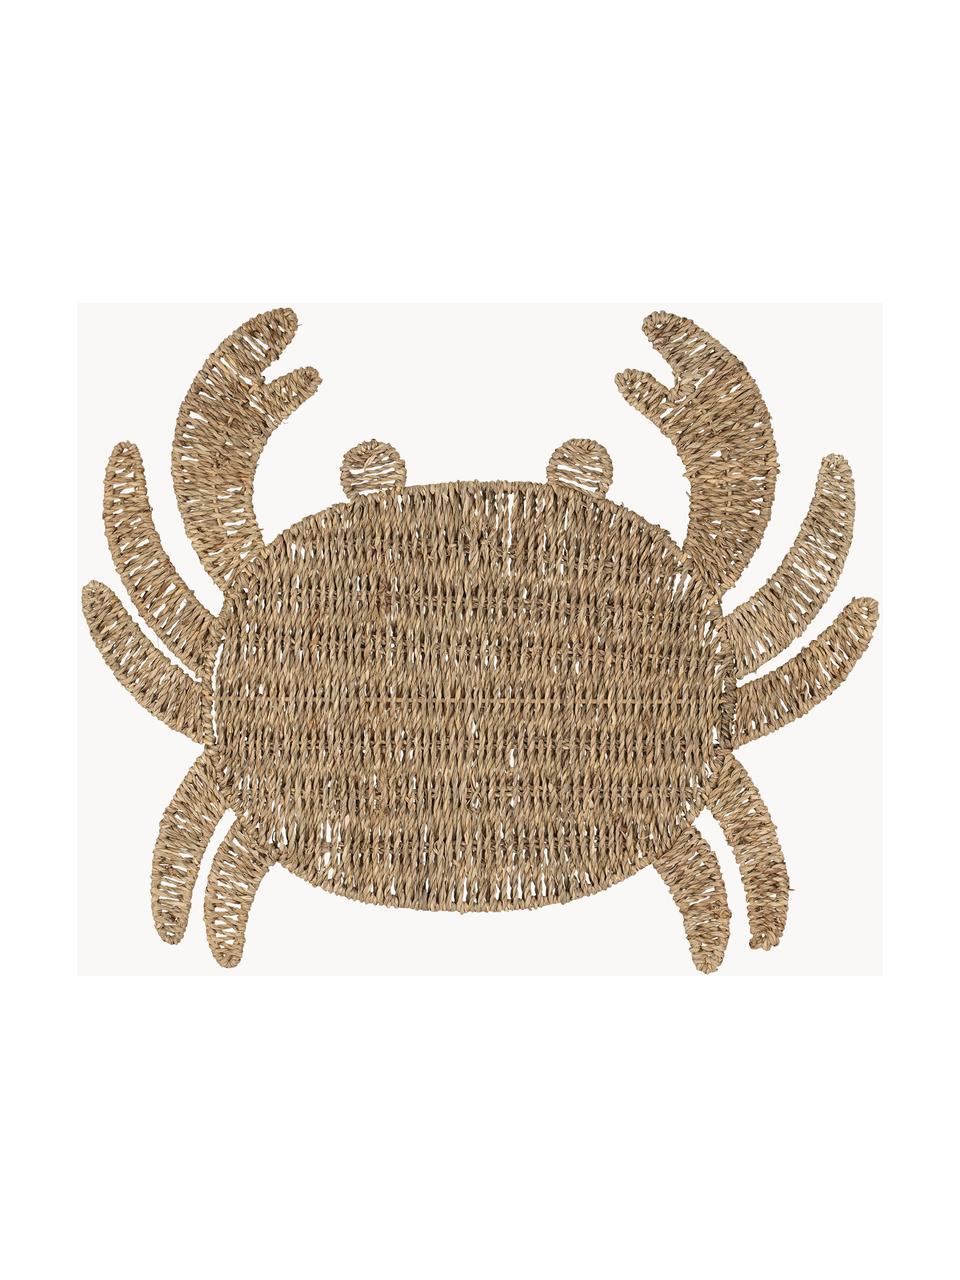 Mantel individual de seegrass Crab, Jacintos de agua, Marrón, An 38 x L 48 cm